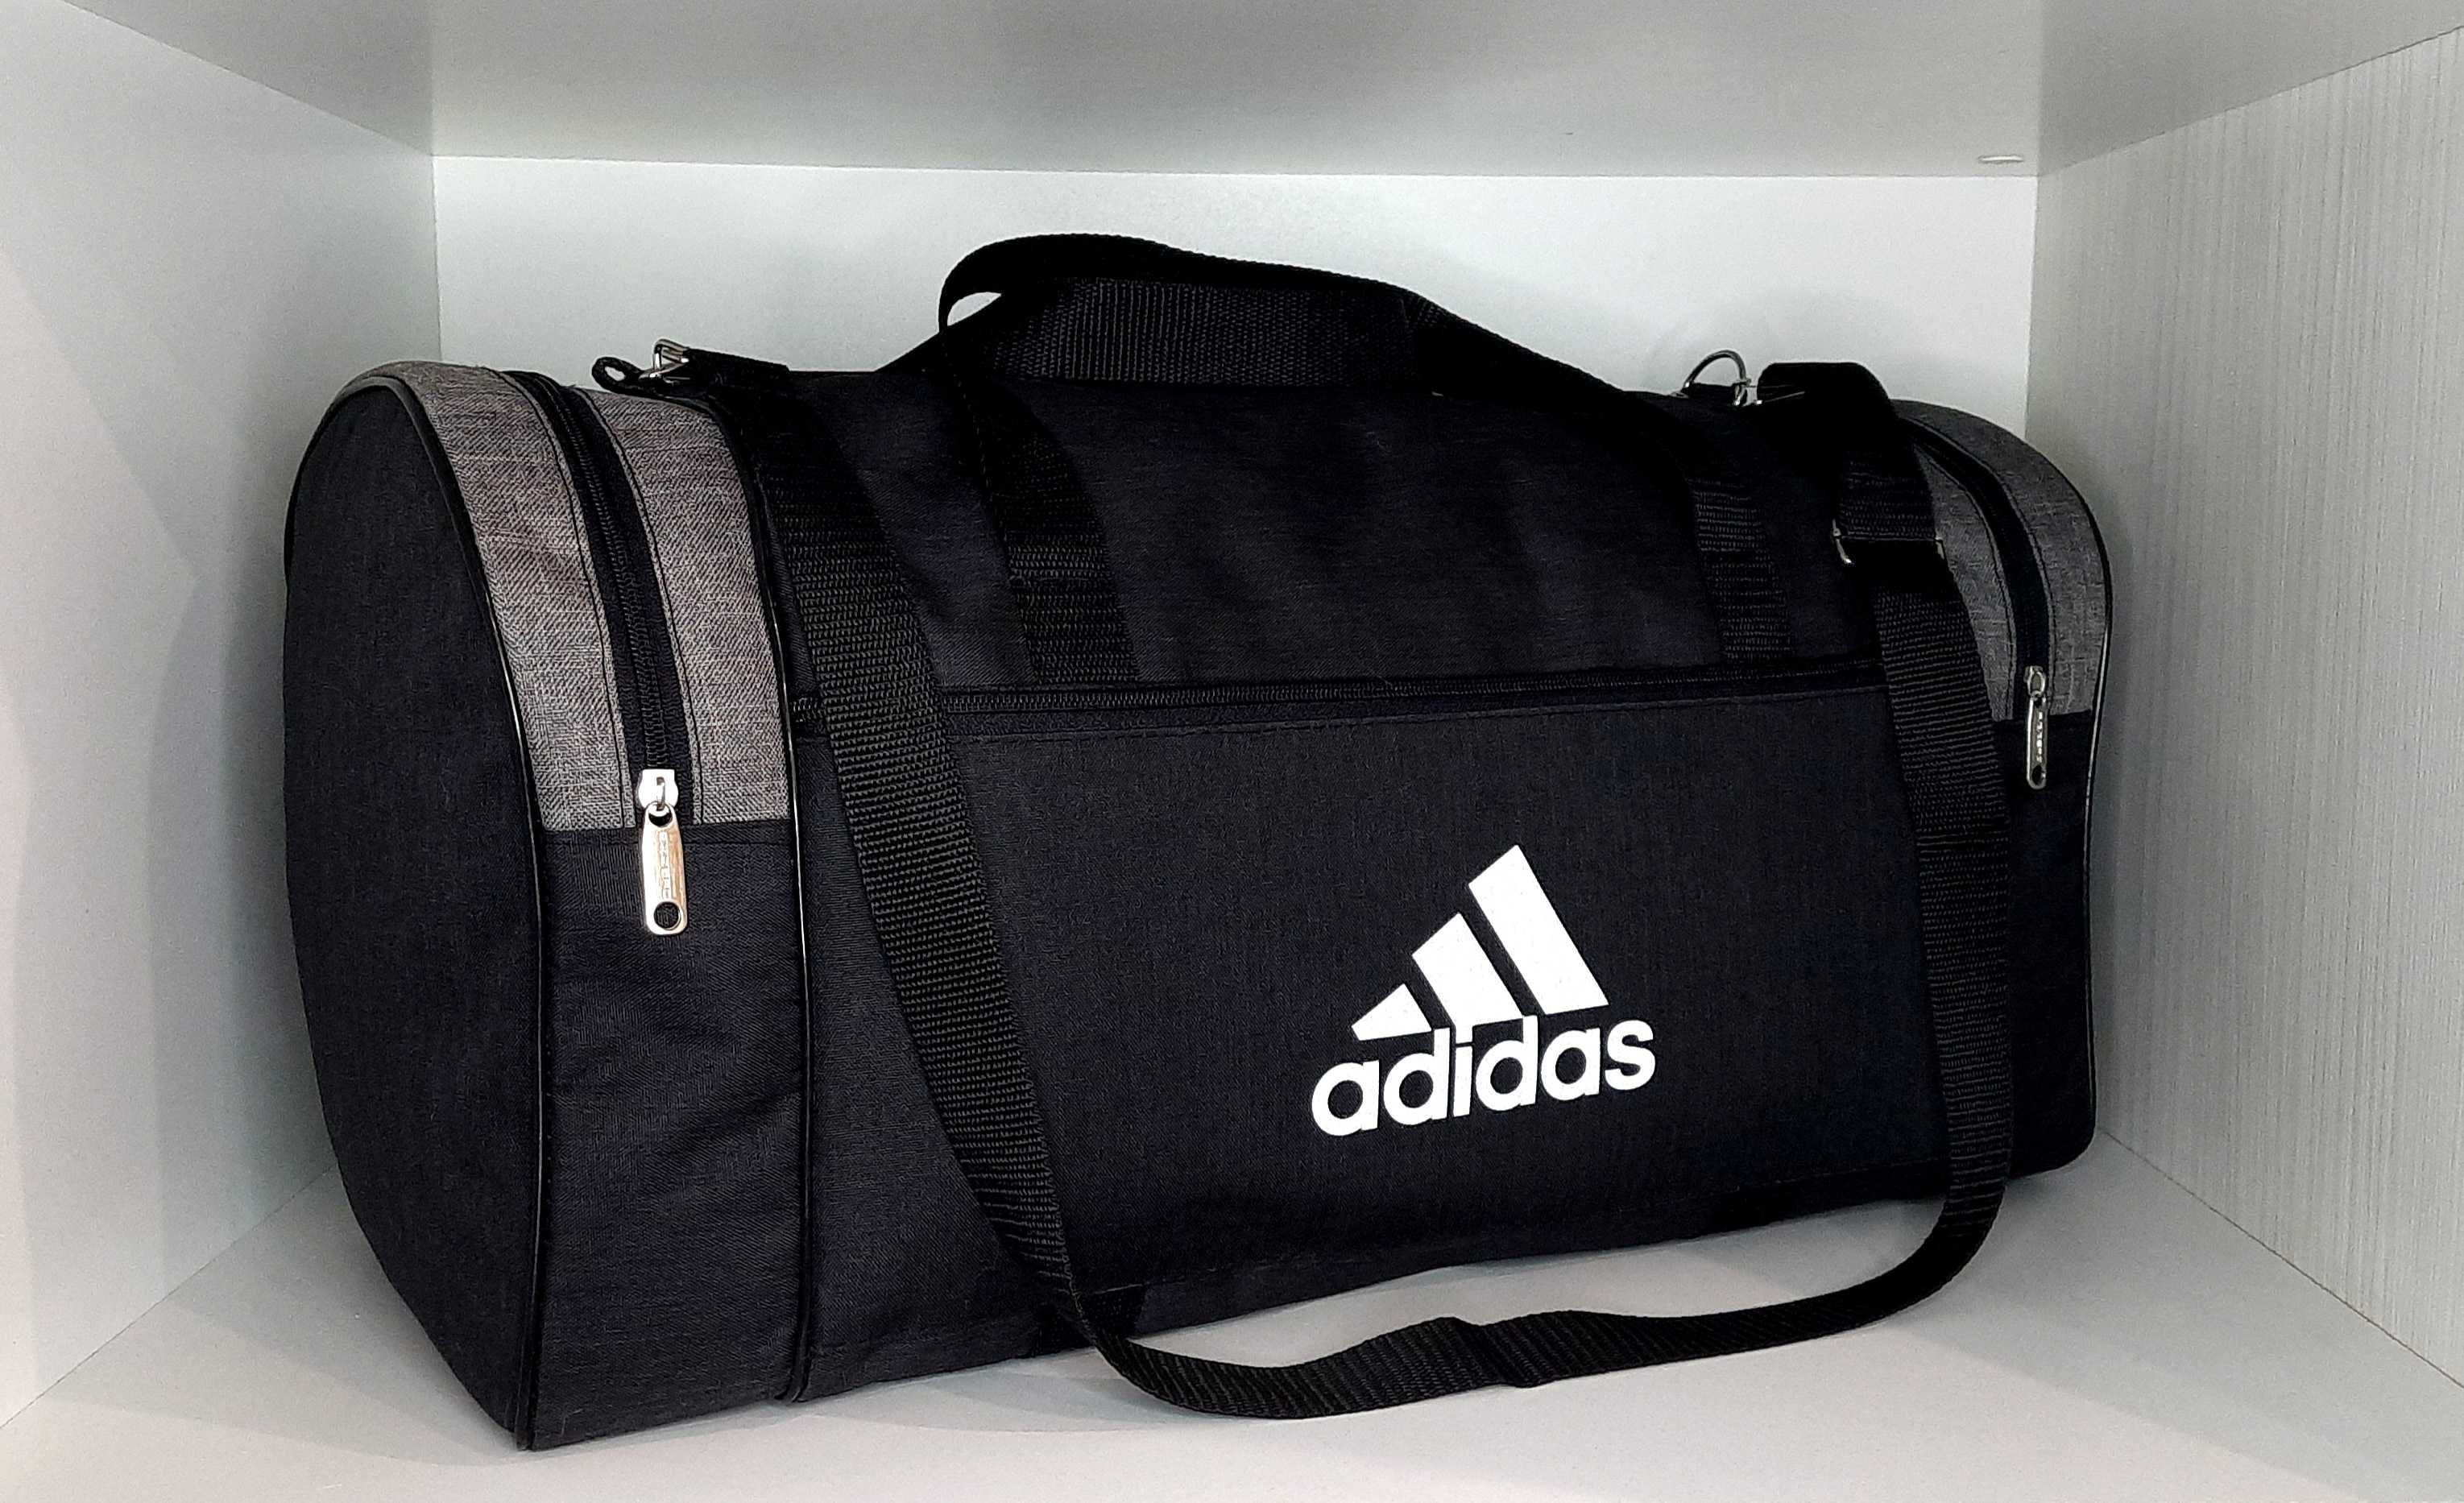 Дорожная,спортивная сумка Adidas.Новая.